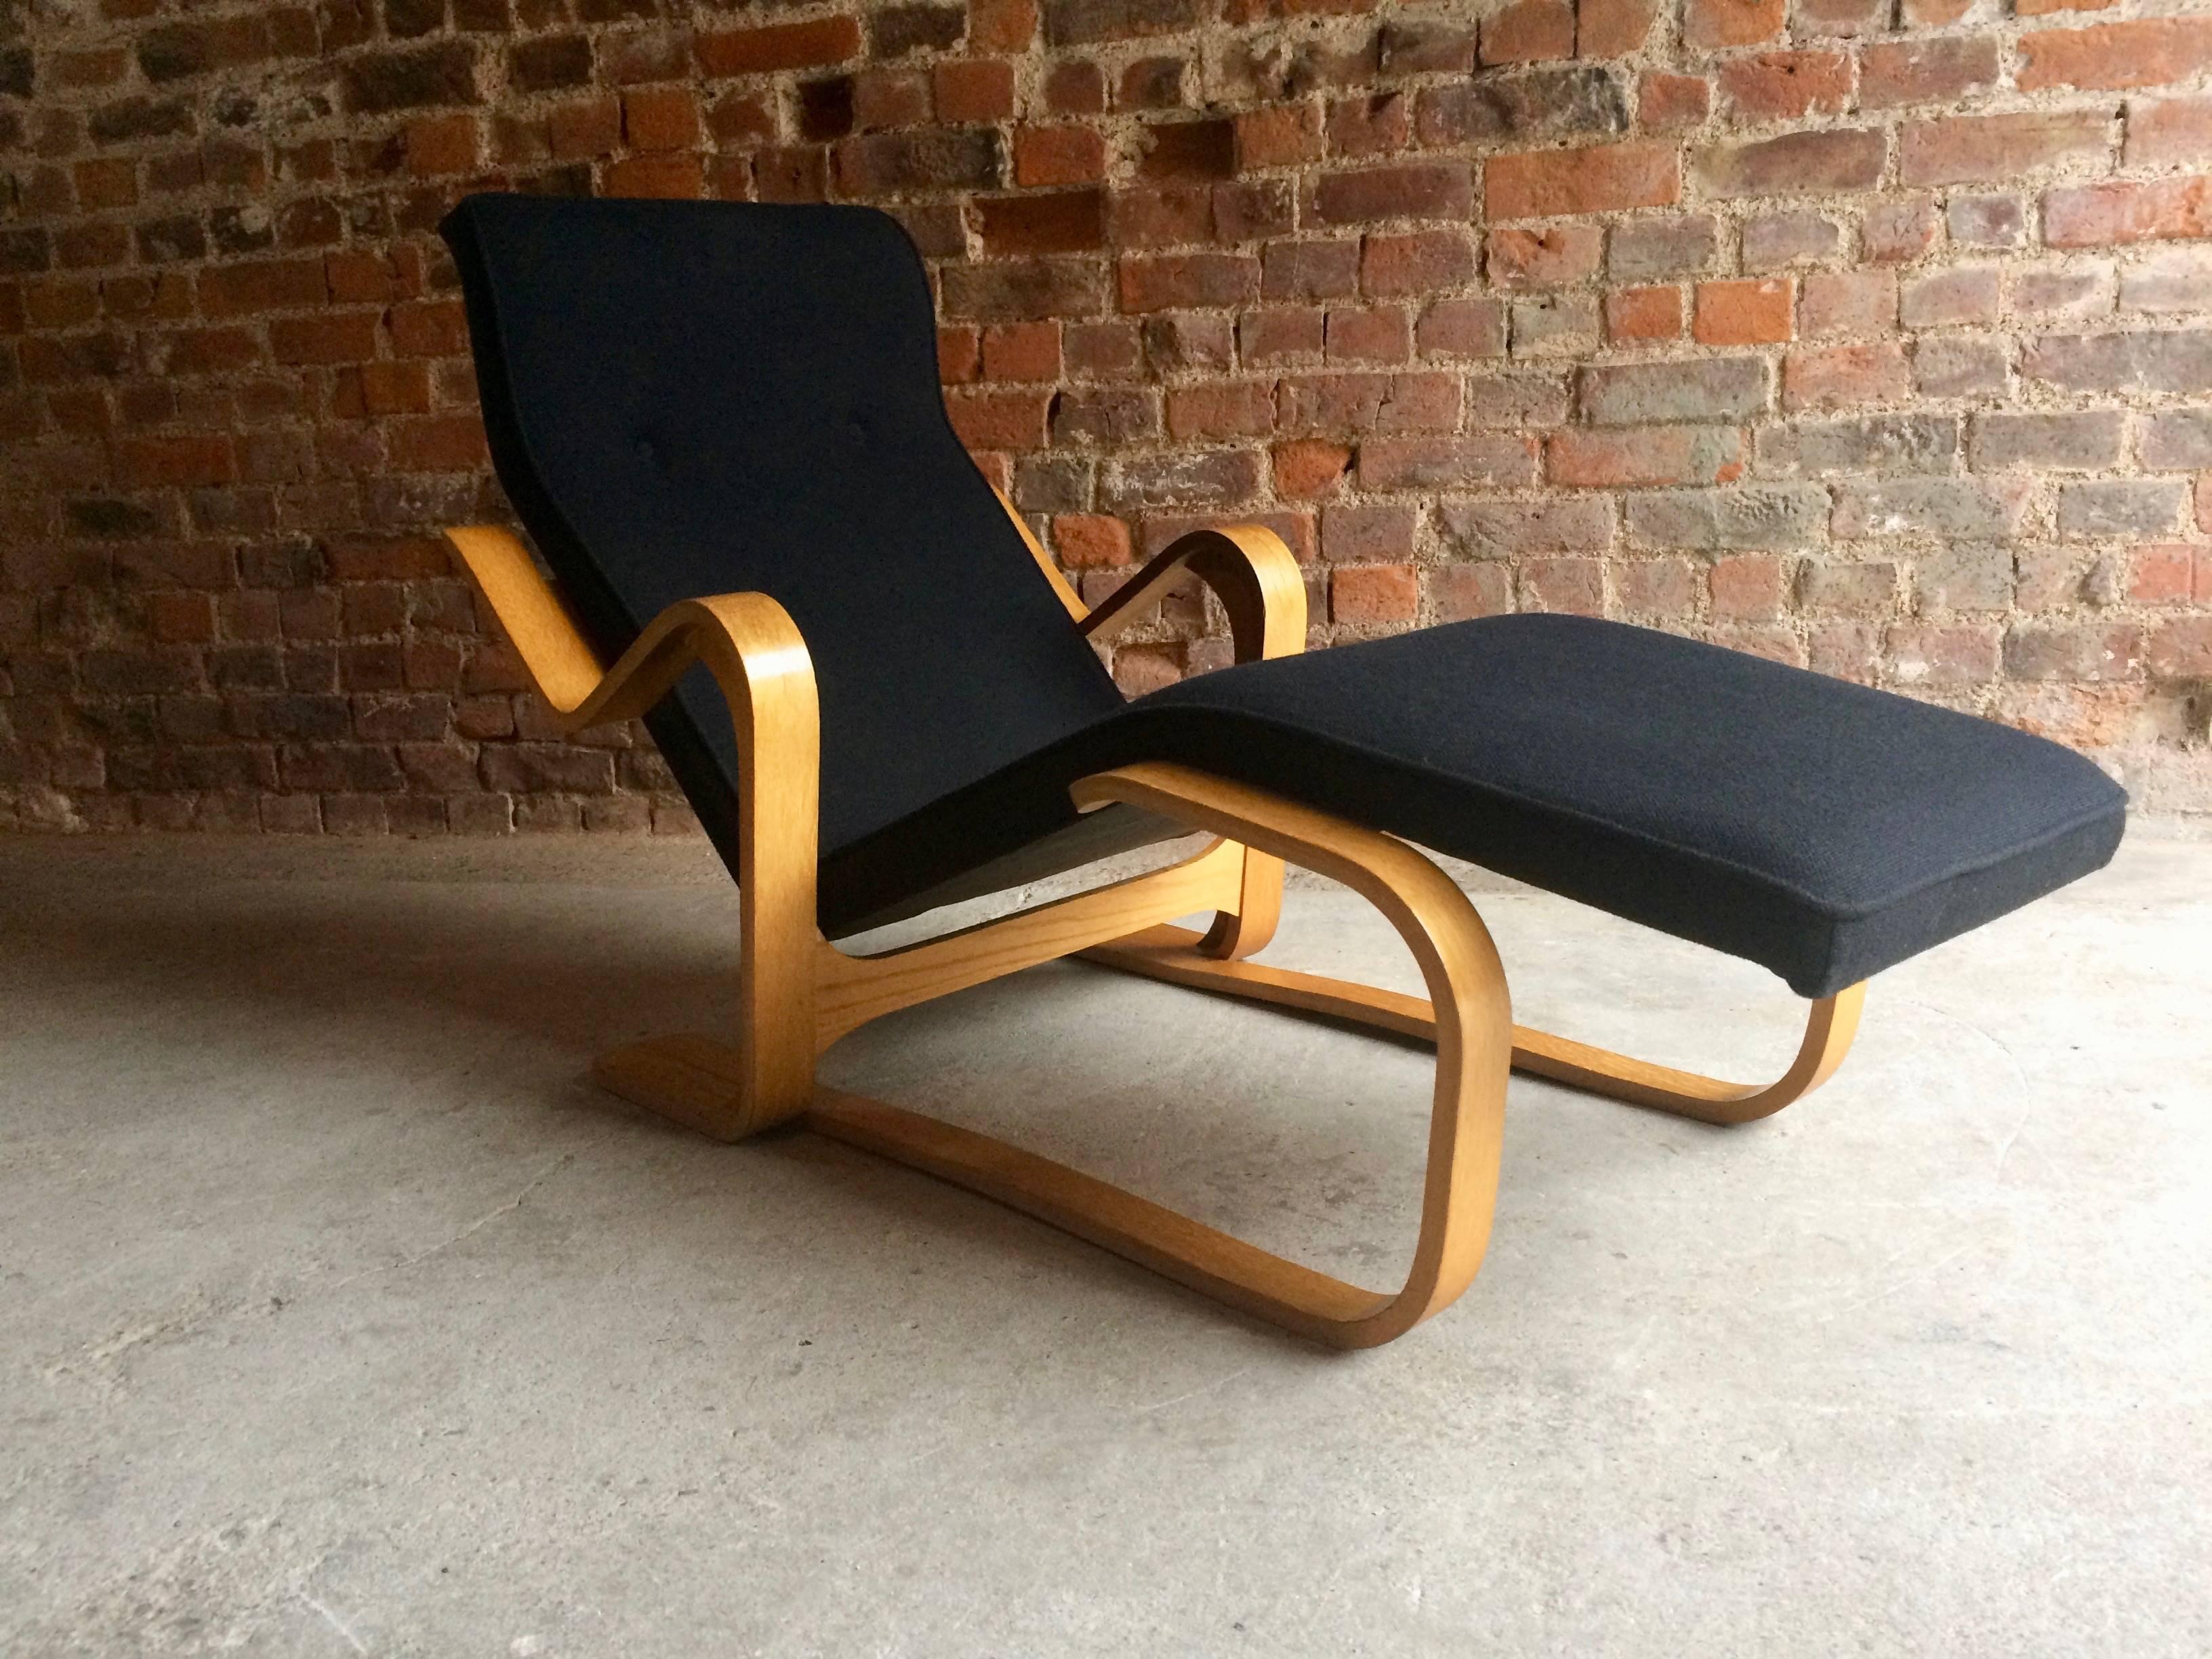 Marcel Breuer Long Chair Chaise Longue Black Midcentury 1970s Bauhaus No. 3 1